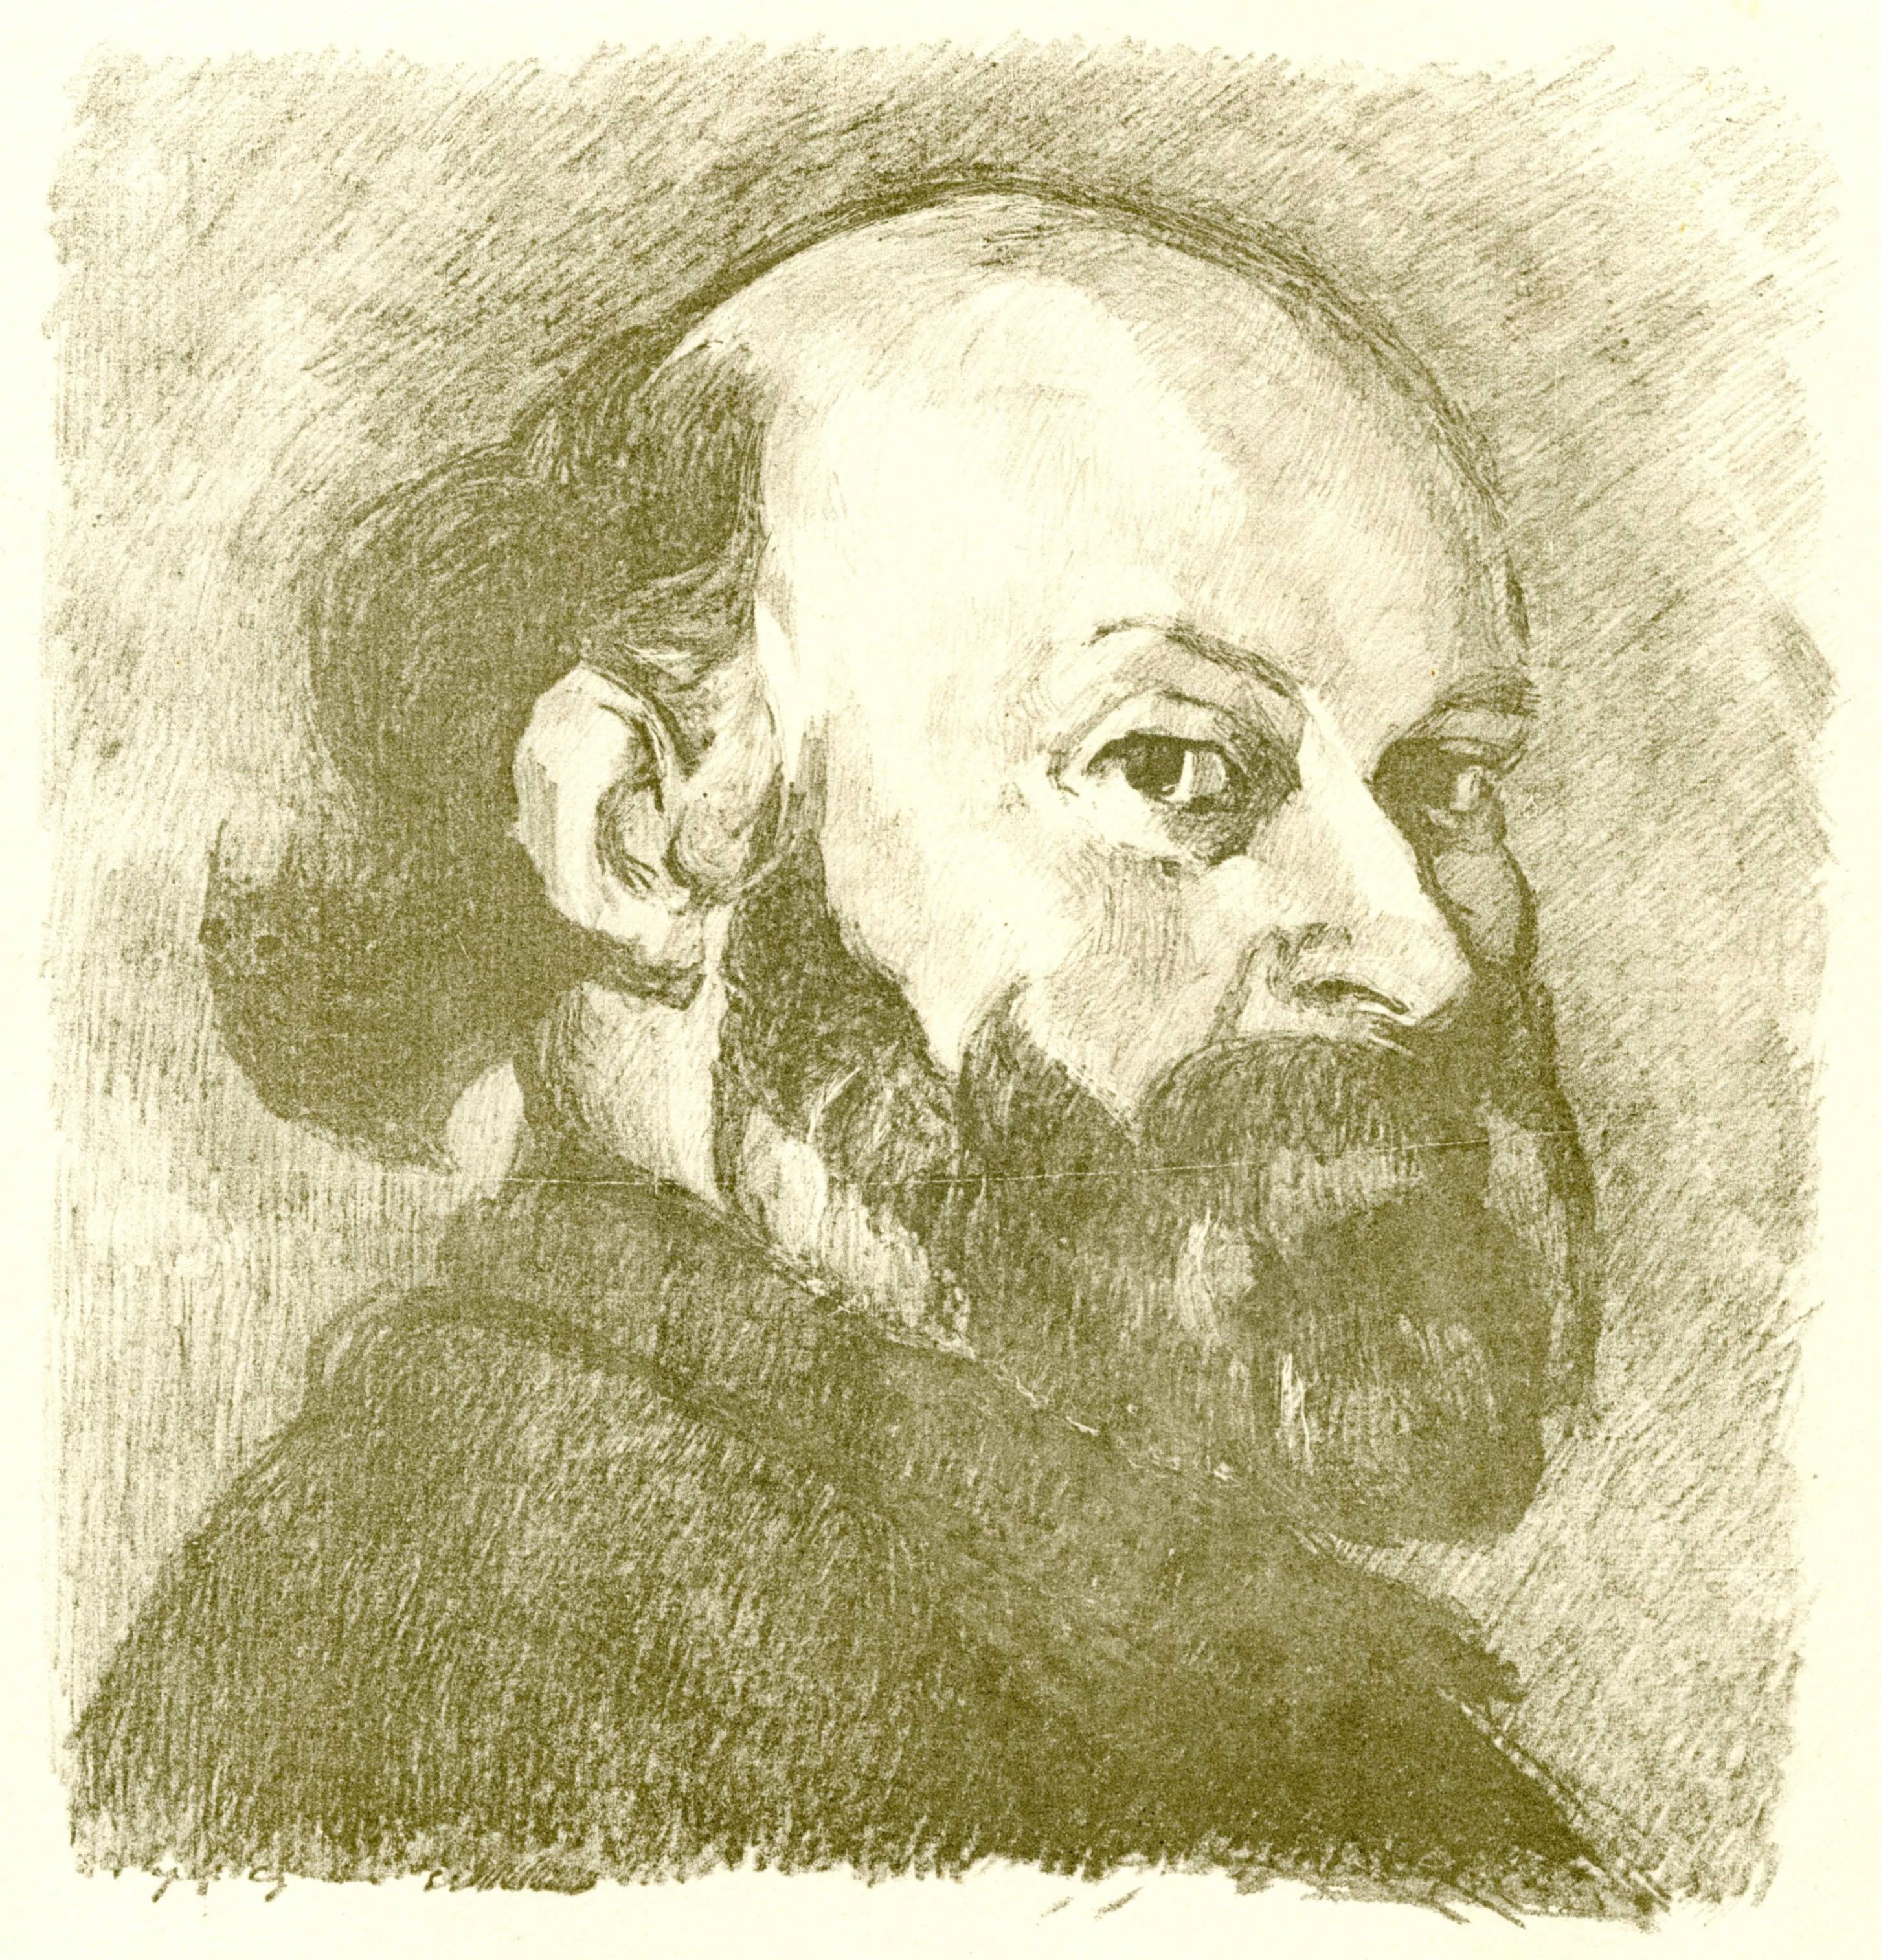 Portrait De Cezanne